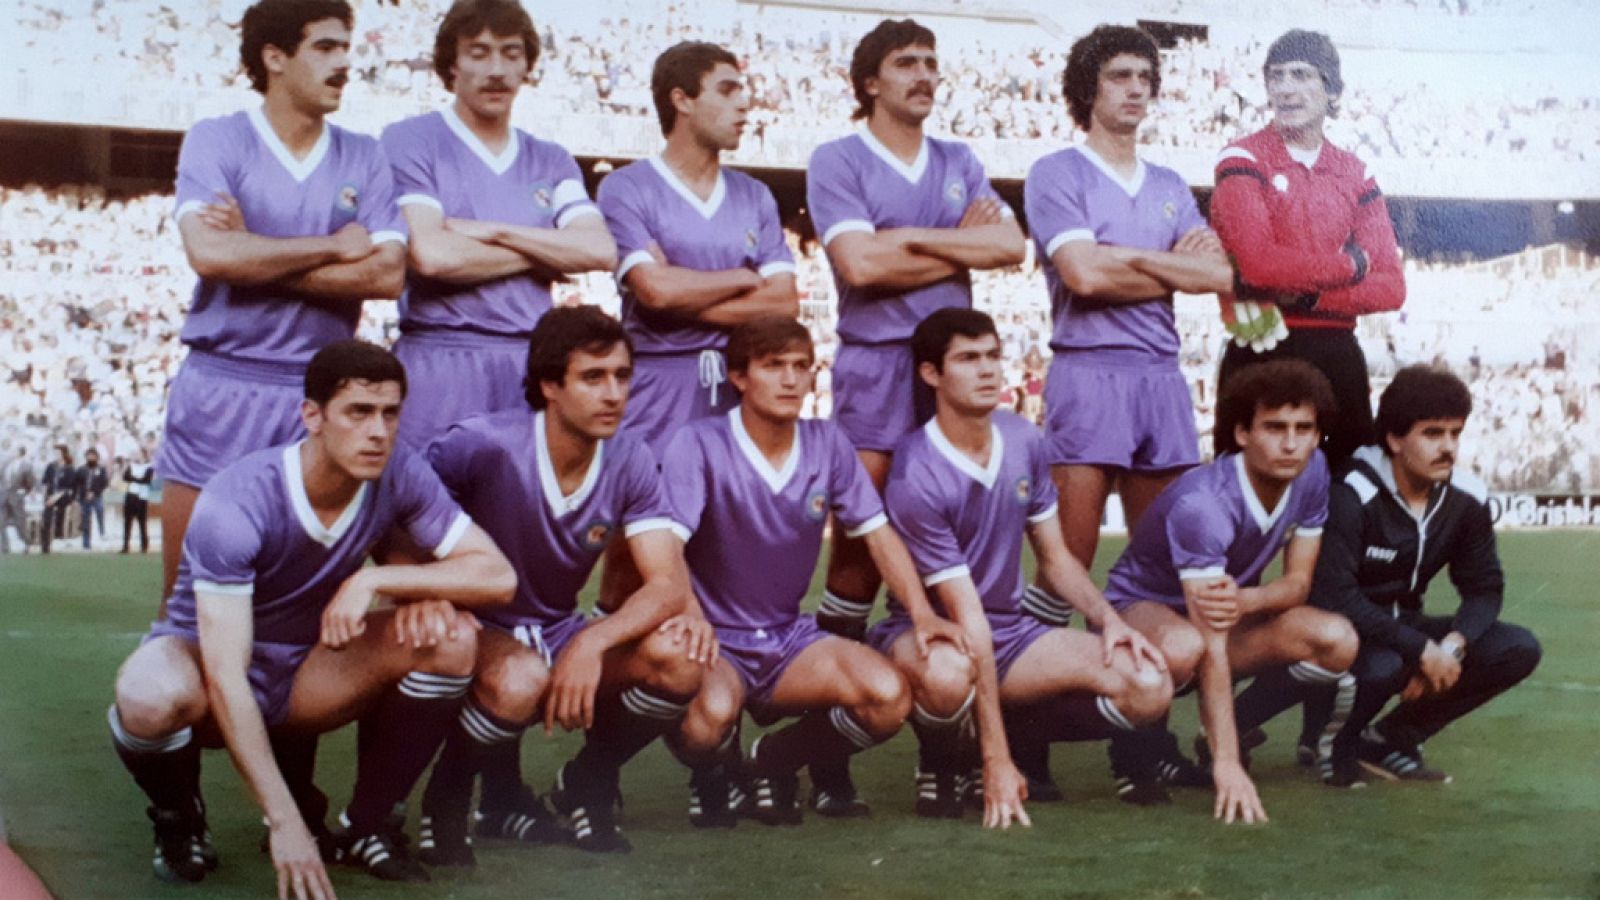 Alineación del Castilla en 1981, año en que jugó la final de Copa contra el Real Madrid.